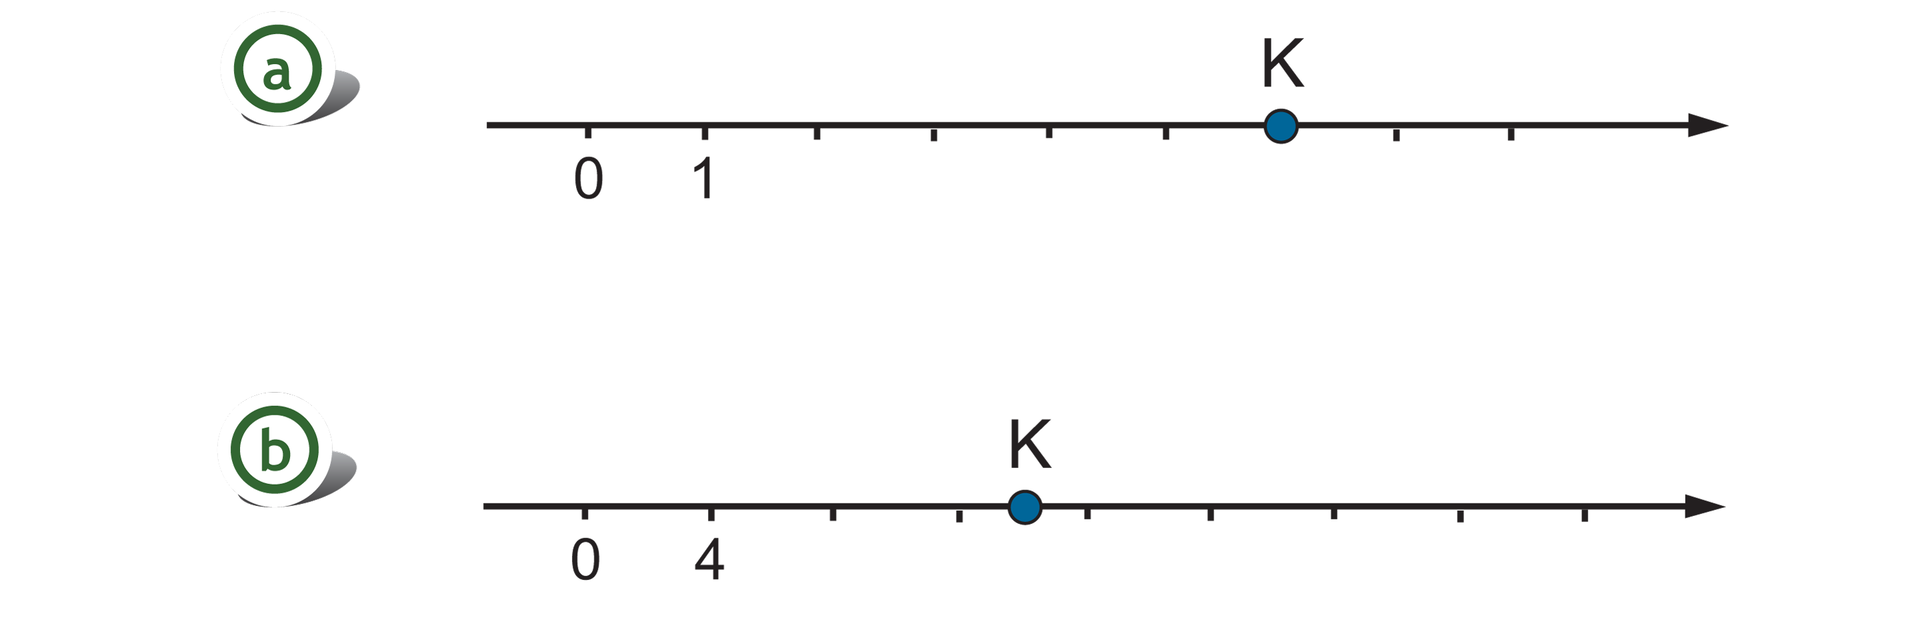 Rysunek dwóch osi liczbowych z zaznaczonymi punktami 0 i 1. Na pierwszej osi odcinek jednostkowy równy 1. Szukany punkt K wyznacza pięć odcinków jednostkowych za liczbą 1. Na drugiej osi odcinek jednostkowy równy 4. Szukany punkt K wyznacza połowę między czwartym i piątym odcinkiem jednostkowym.